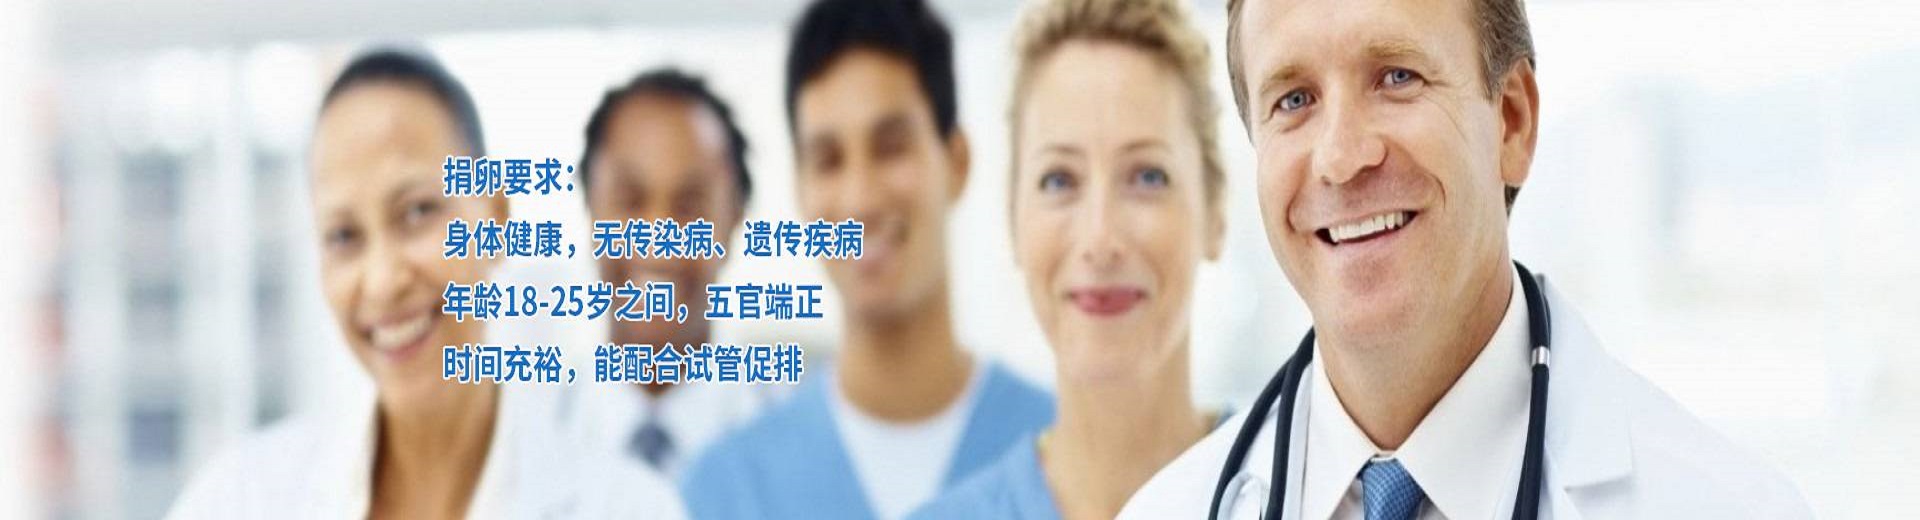 郑州正规医院捐卵,郑州第三方辅助生殖